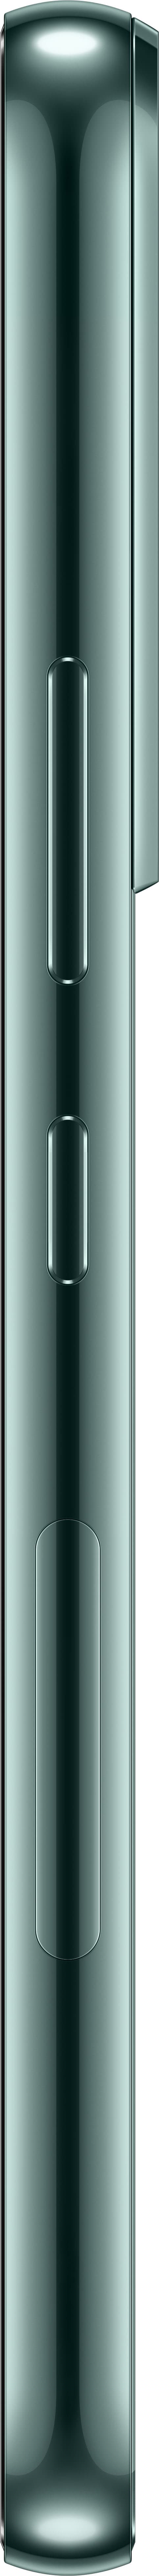 Samsung - Galaxy S22 128GB - Green (Verizon)_4